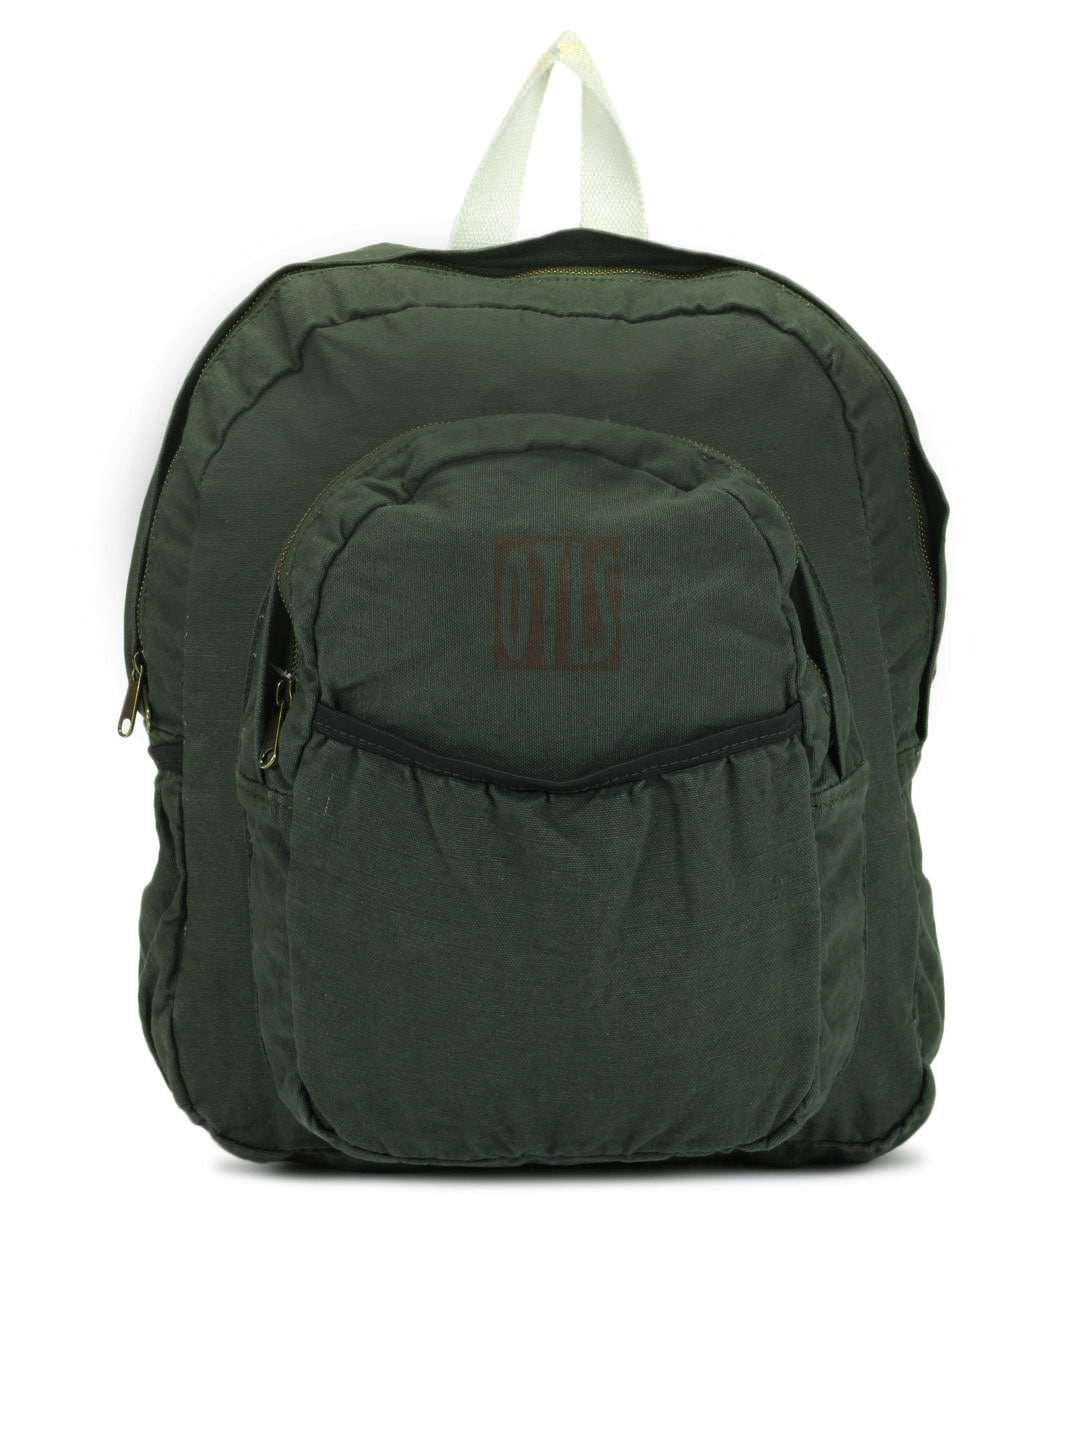 OTLS Unisex Olive Green Backpack